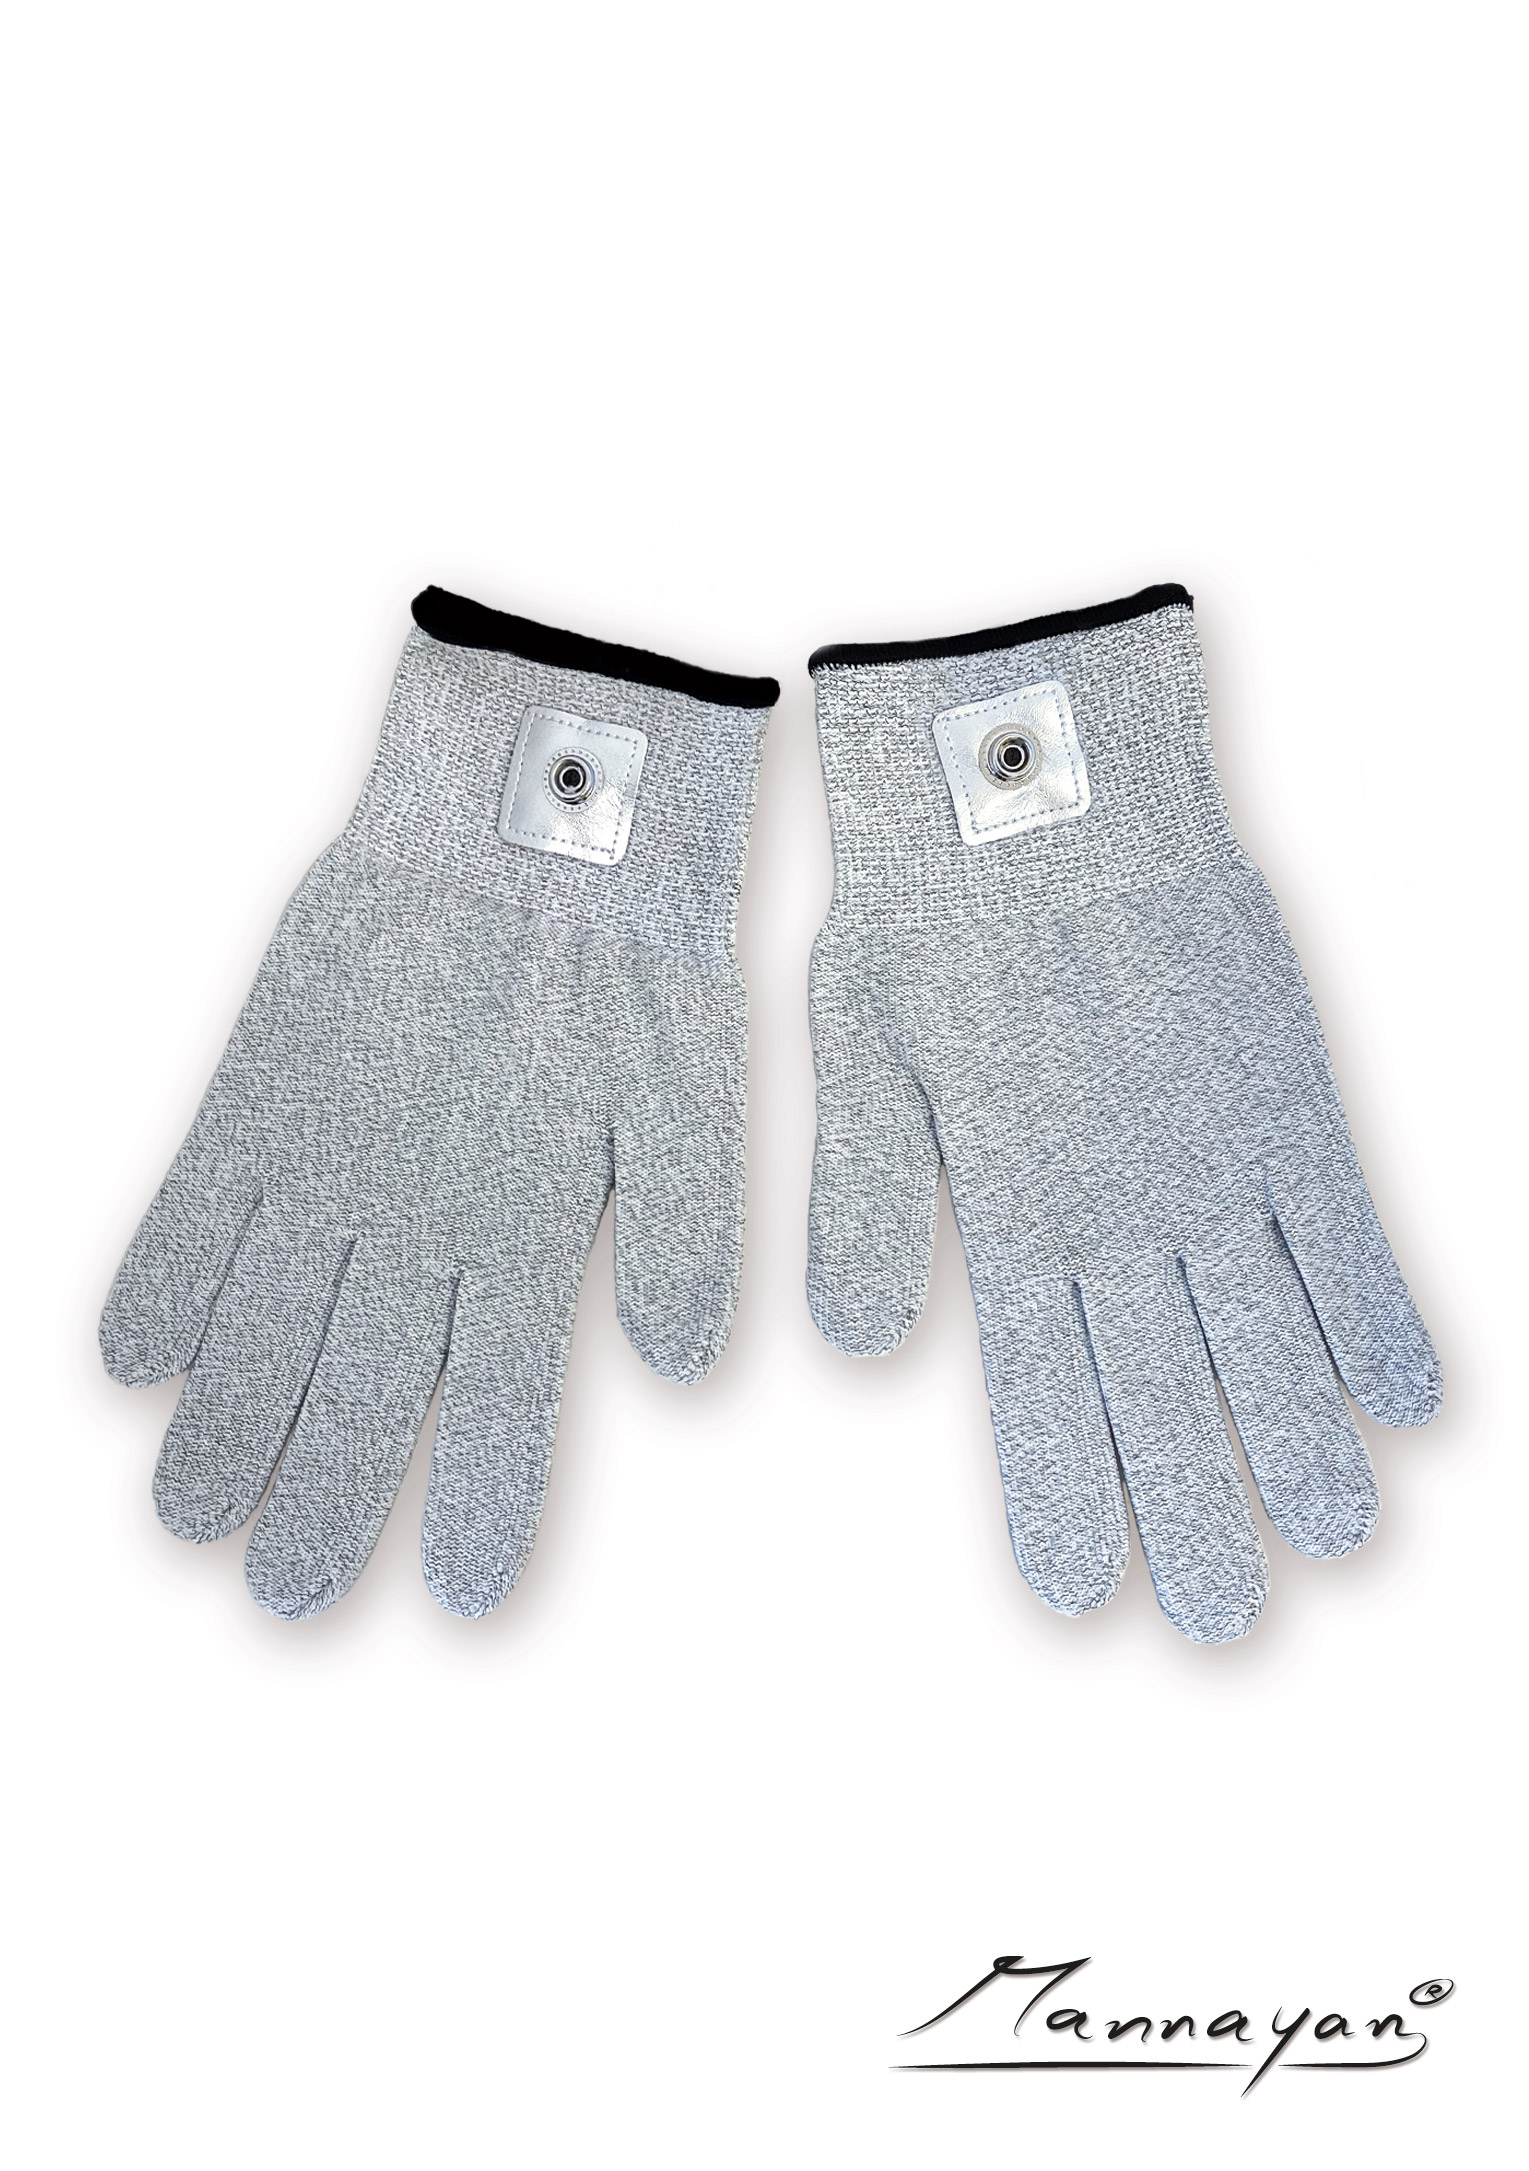 Silberfaser-Handschuhe für Diamond Shield Zapper (1 Paar)